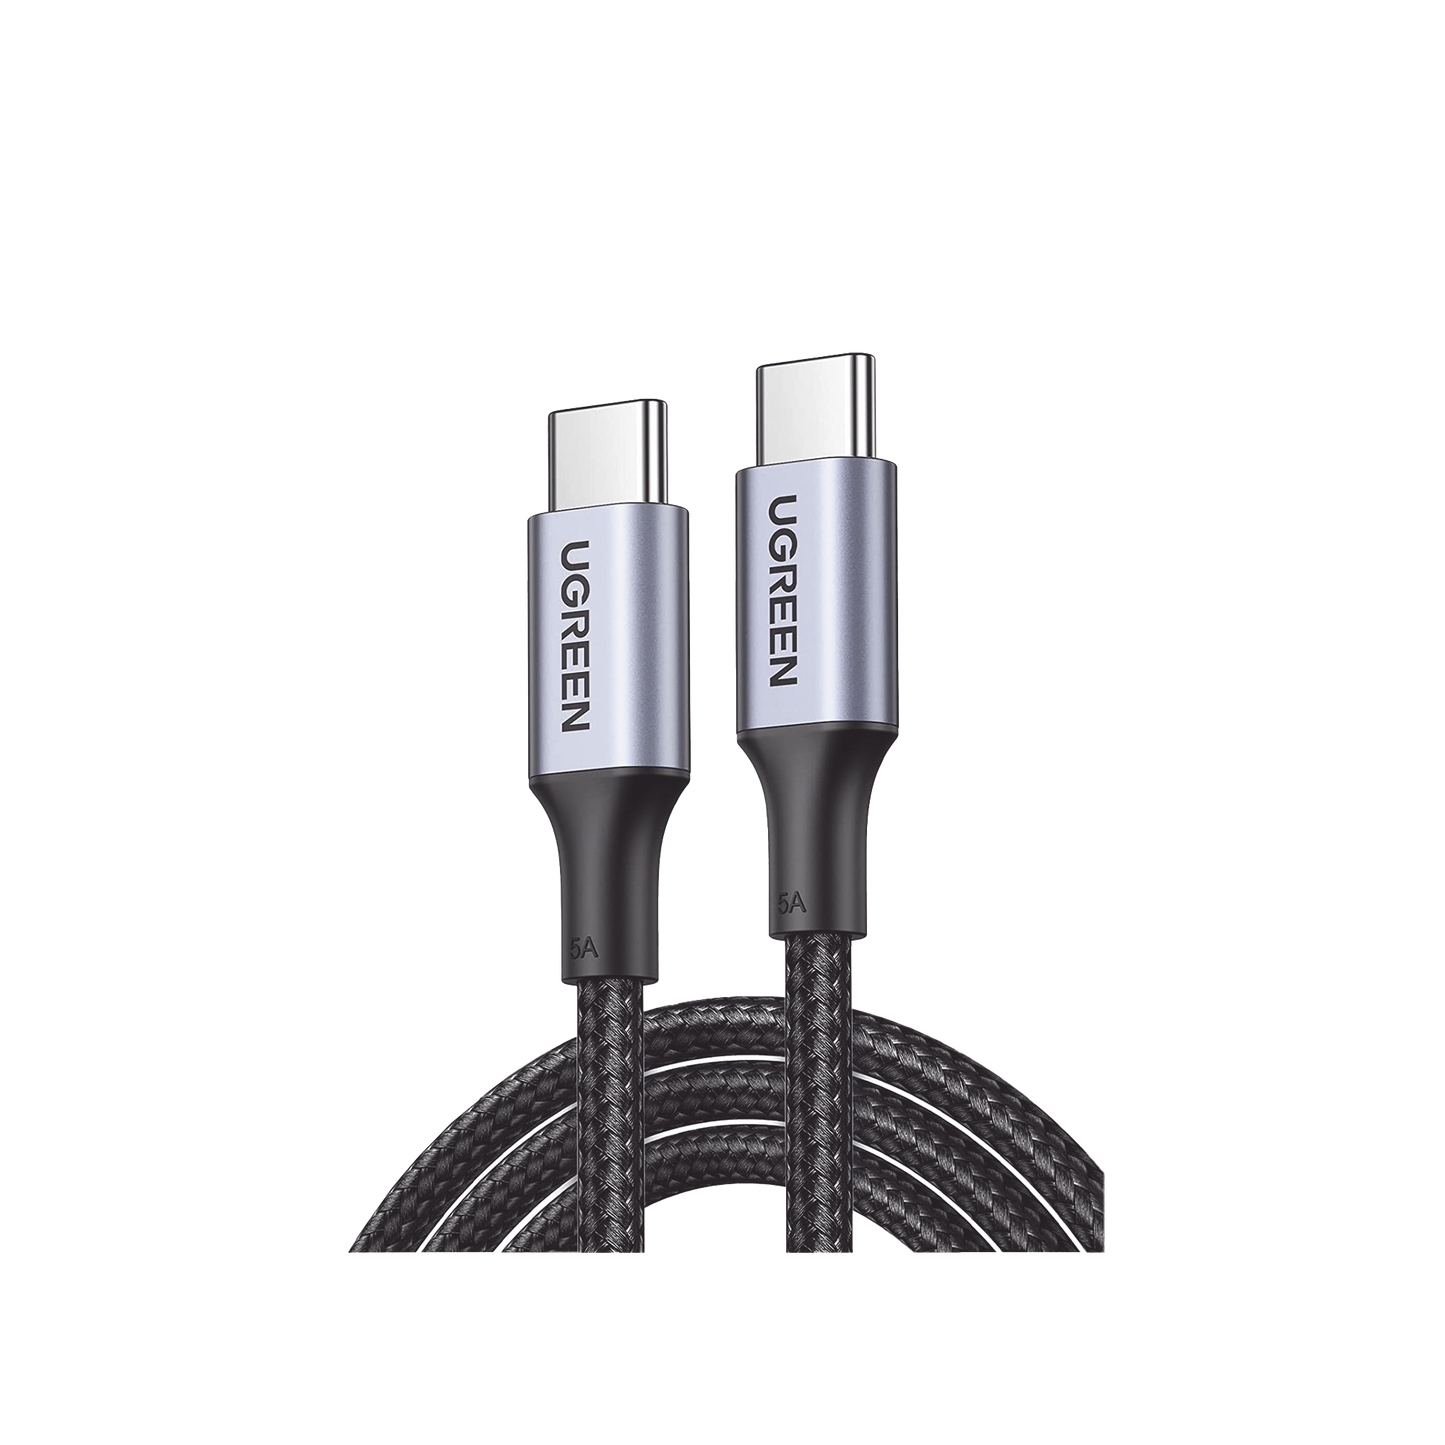 Cable USB-C a USB-C | 3 Metros | Carga Rápida de hasta 100W | Transferencia de datos de 480 Mbps | PD3.0 | QC4.0/3.0/2.0 | FPC | AFC | Protección Integrada| Caja de Aluminio | Nylon Trenzado |Color Negro | 2 años de Garantía.